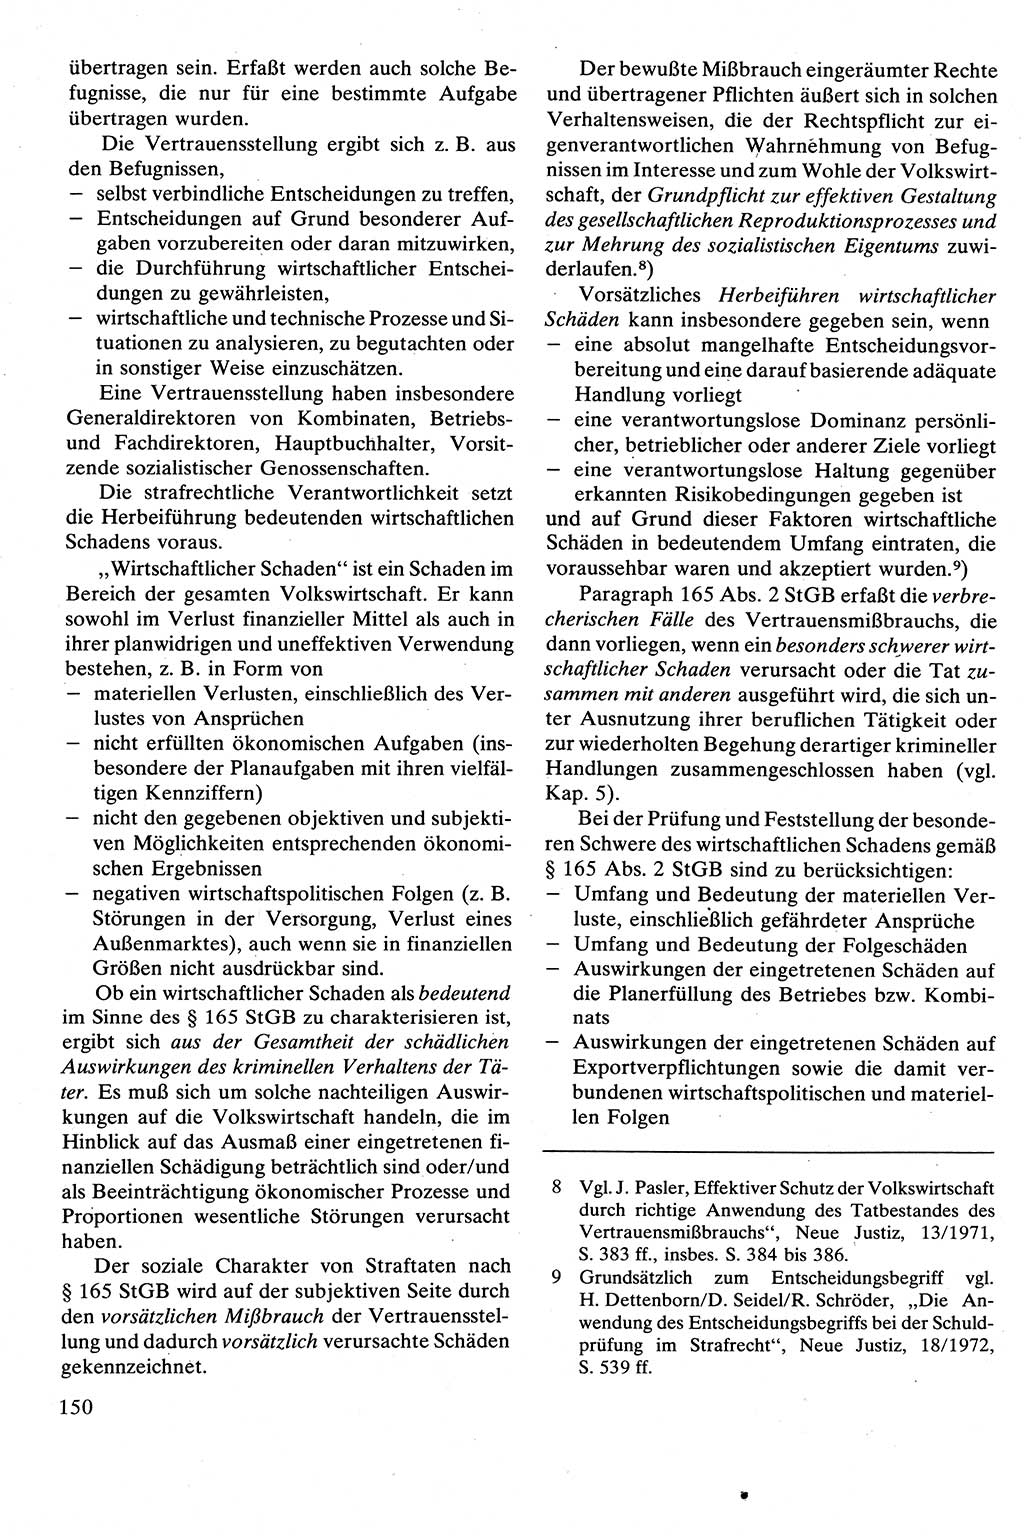 Strafrecht [Deutsche Demokratische Republik (DDR)], Besonderer Teil, Lehrbuch 1981, Seite 150 (Strafr. DDR BT Lb. 1981, S. 150)